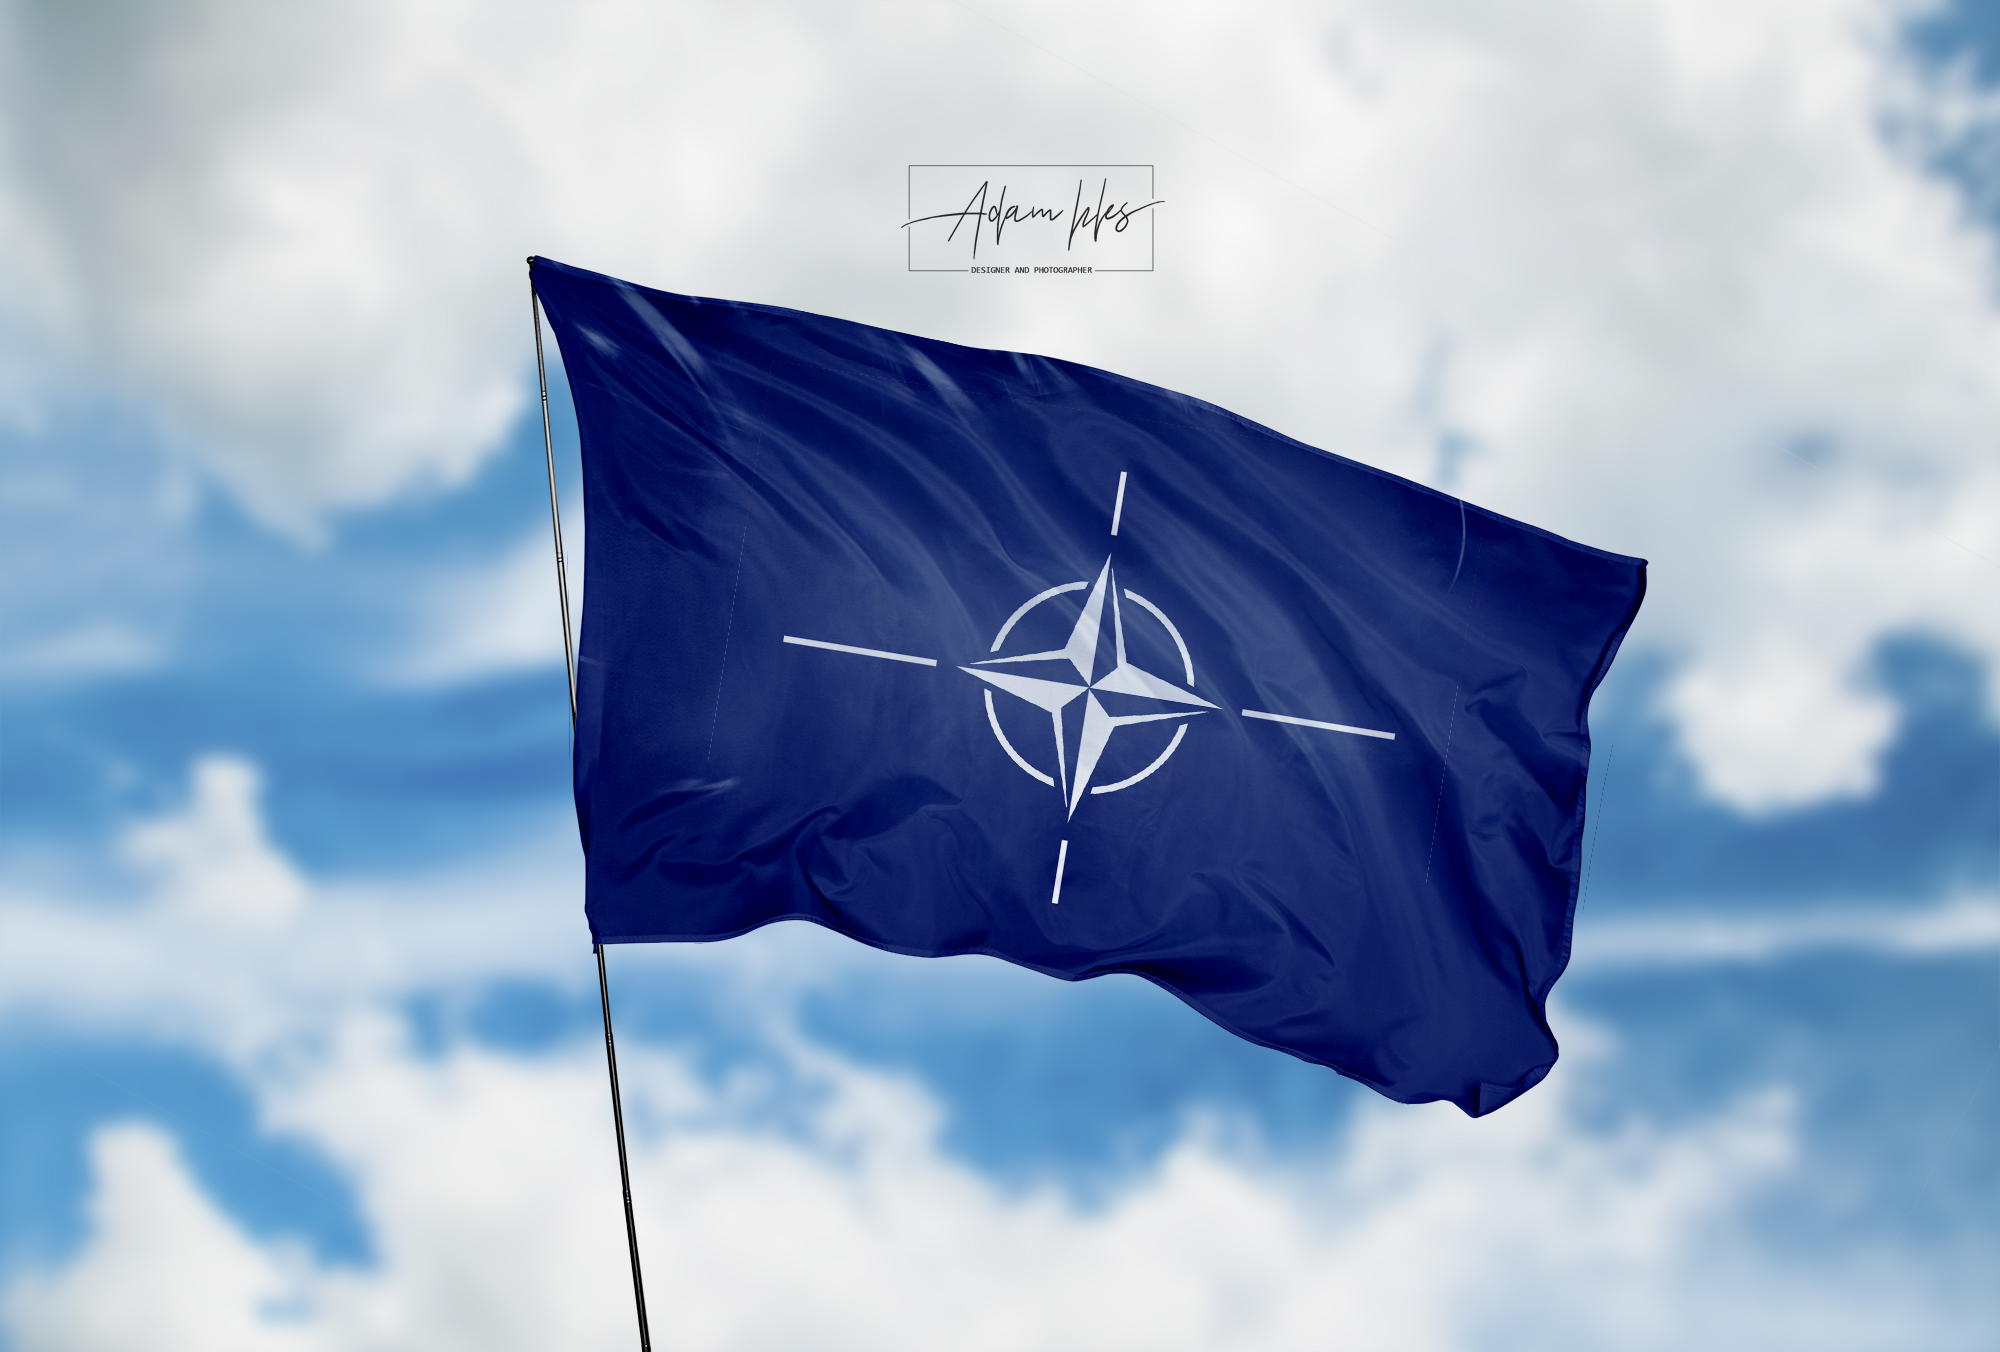 تحميل اجمل خلفية حلف الناتو خلفية علم حلف الناتو يرفرف في السماء 4K